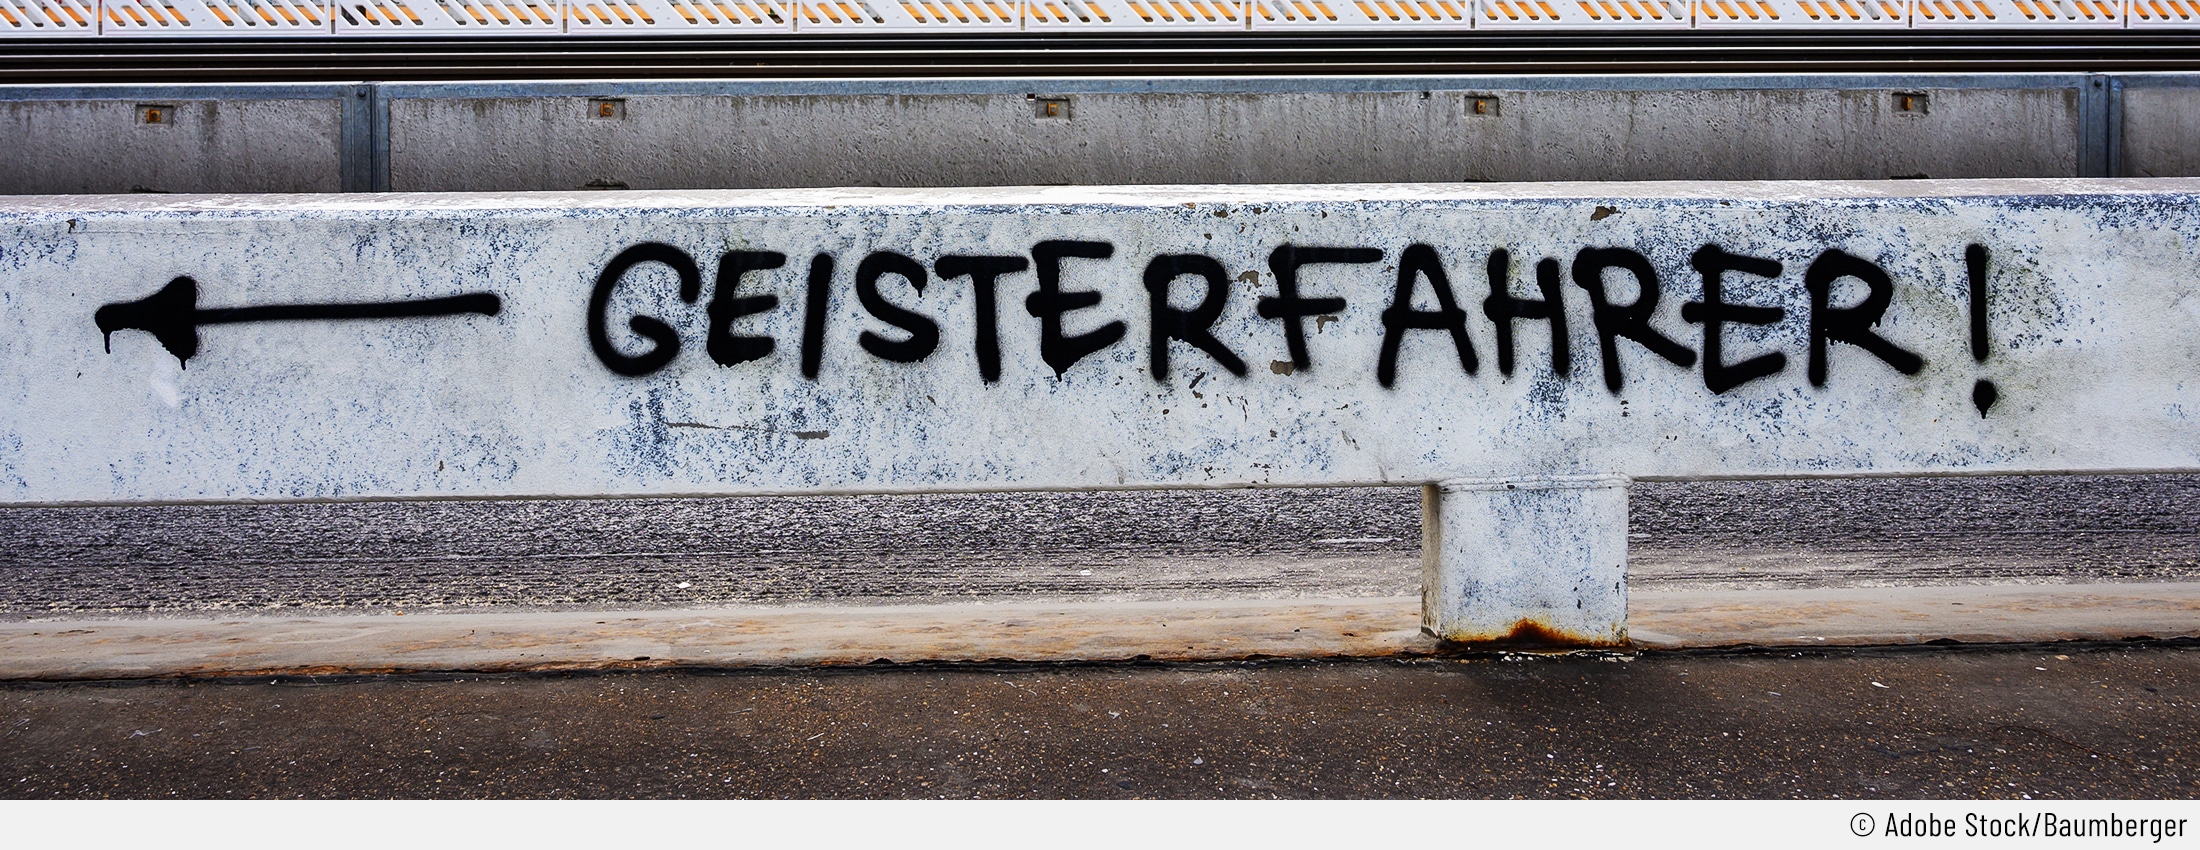 Auf dem Bild sieht man ein Graffti auf einer Leitplanke, das "Geisterfahrer!" sagt, während ein Pfeil nach links zeigt.